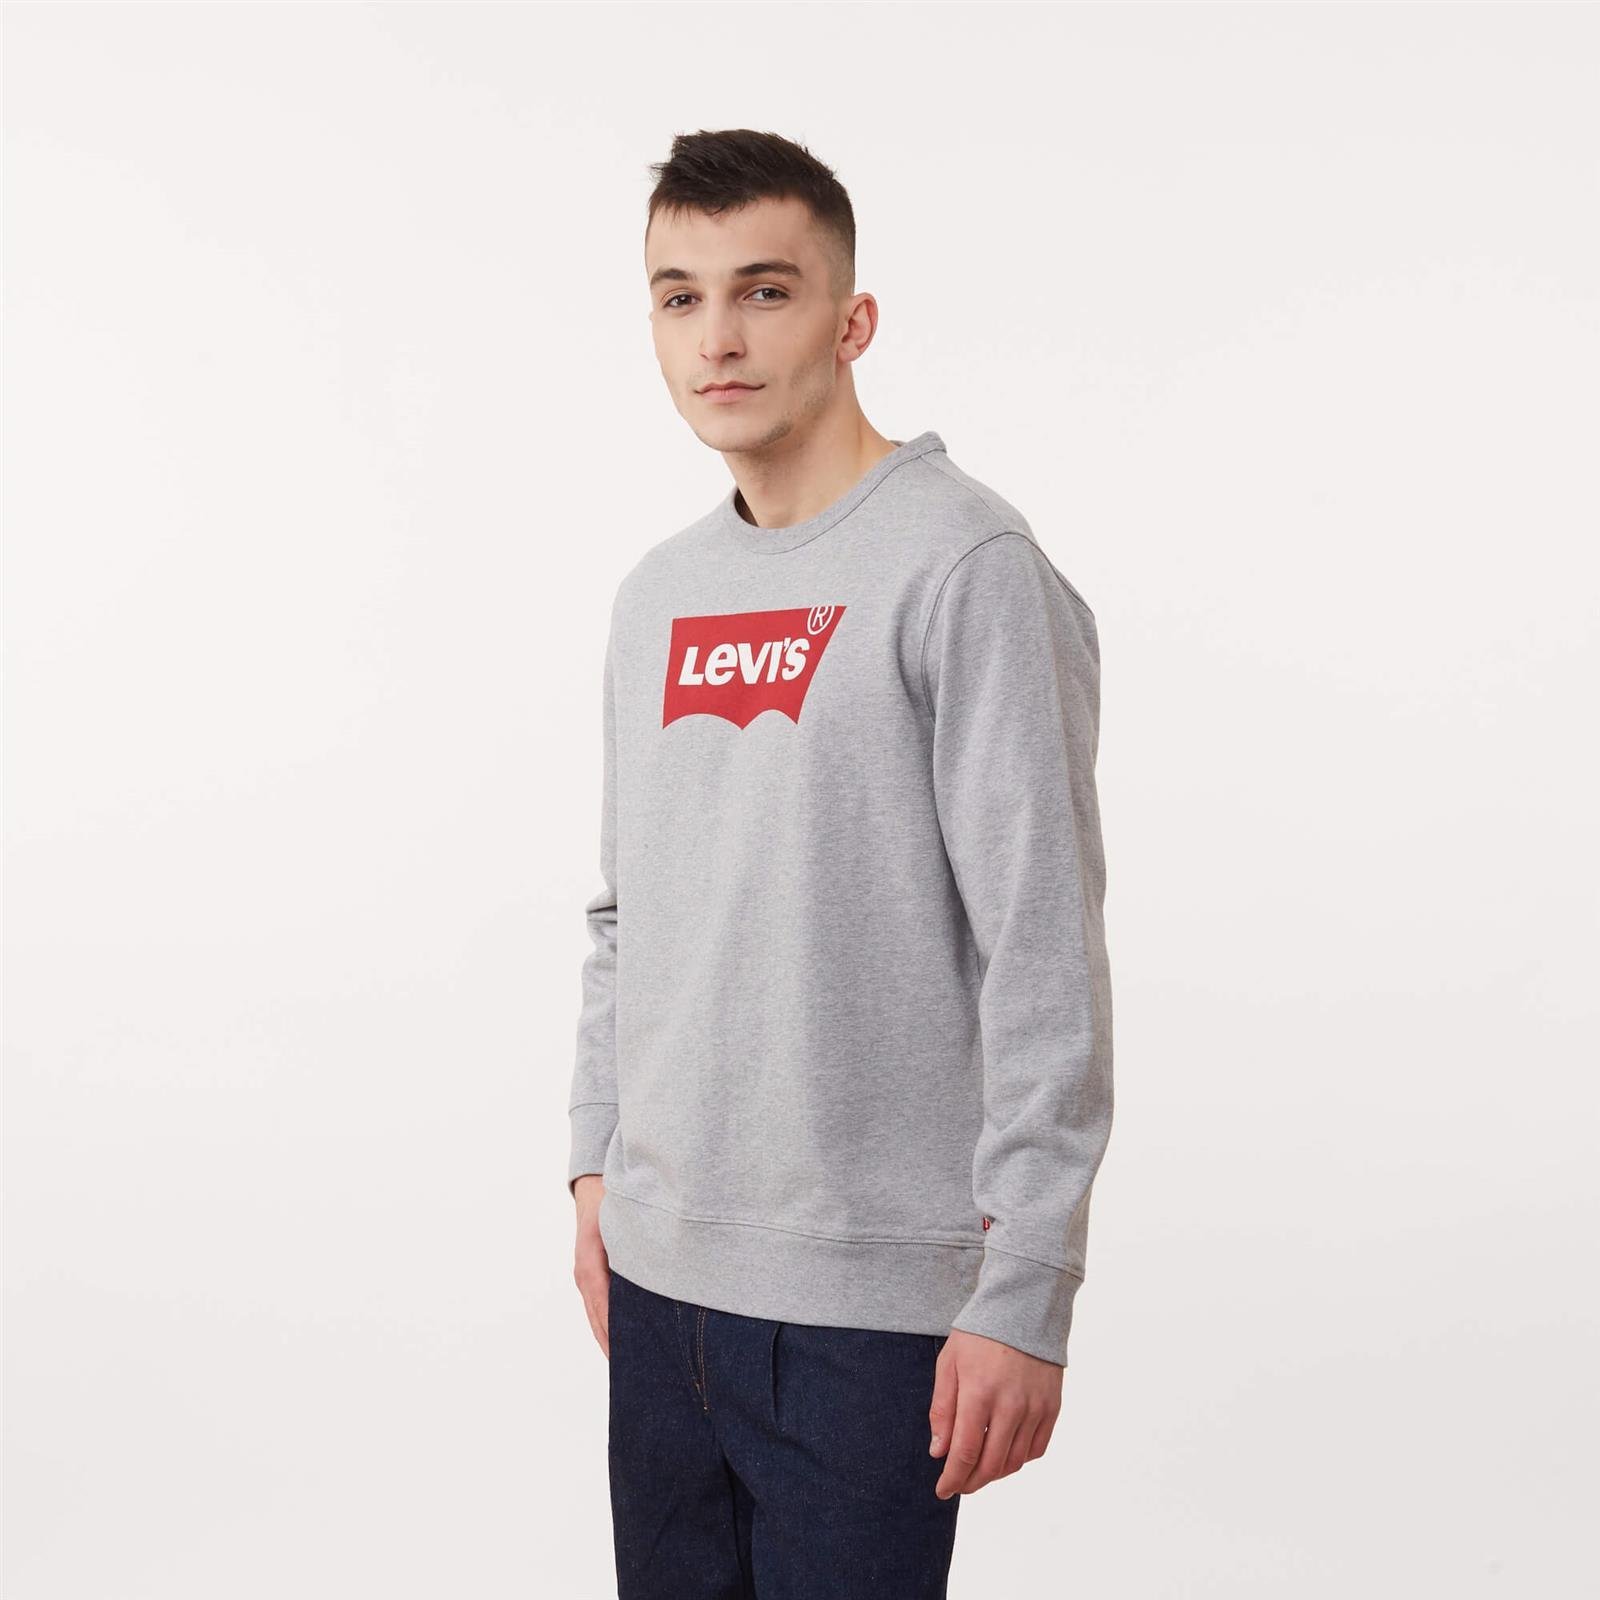 Levi's Graphic Crew Sweatshirt Heather Grey | Men's \ Men's clothing \  Sweatshirts Brands \ #Marki - 3 \ Levi's